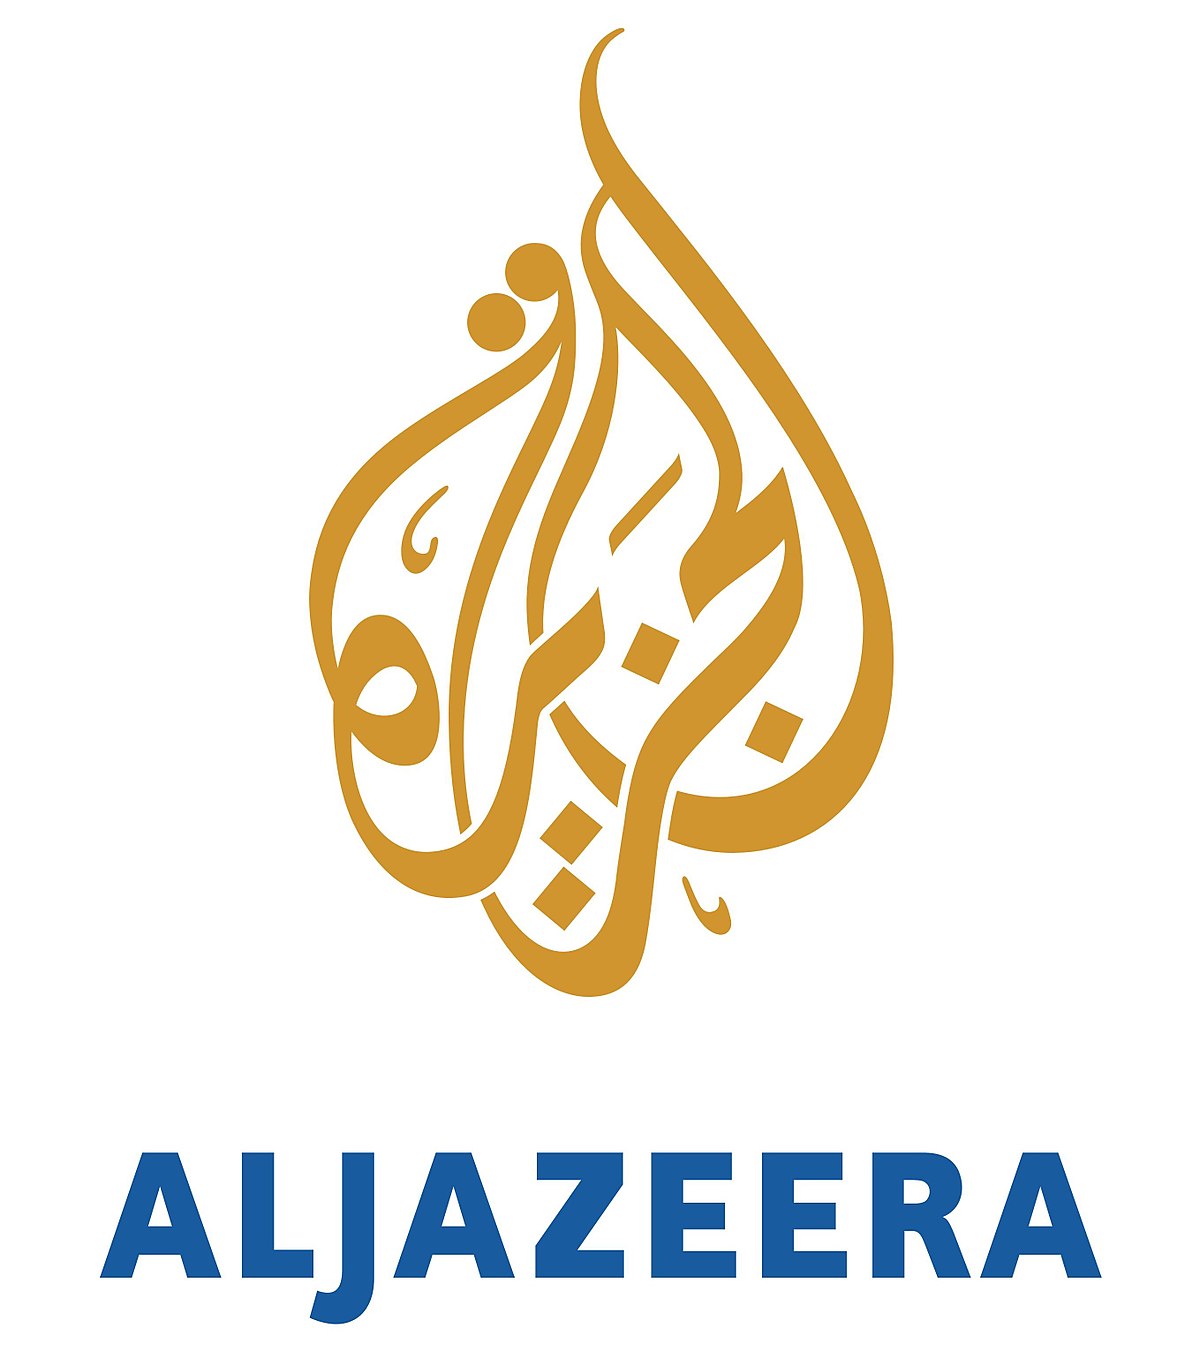 استقبل تردد قناة الجزيرة تحديث يناير 2021 على الاقمار الصناعية المختلفة لمتابعة اهم الاخبار